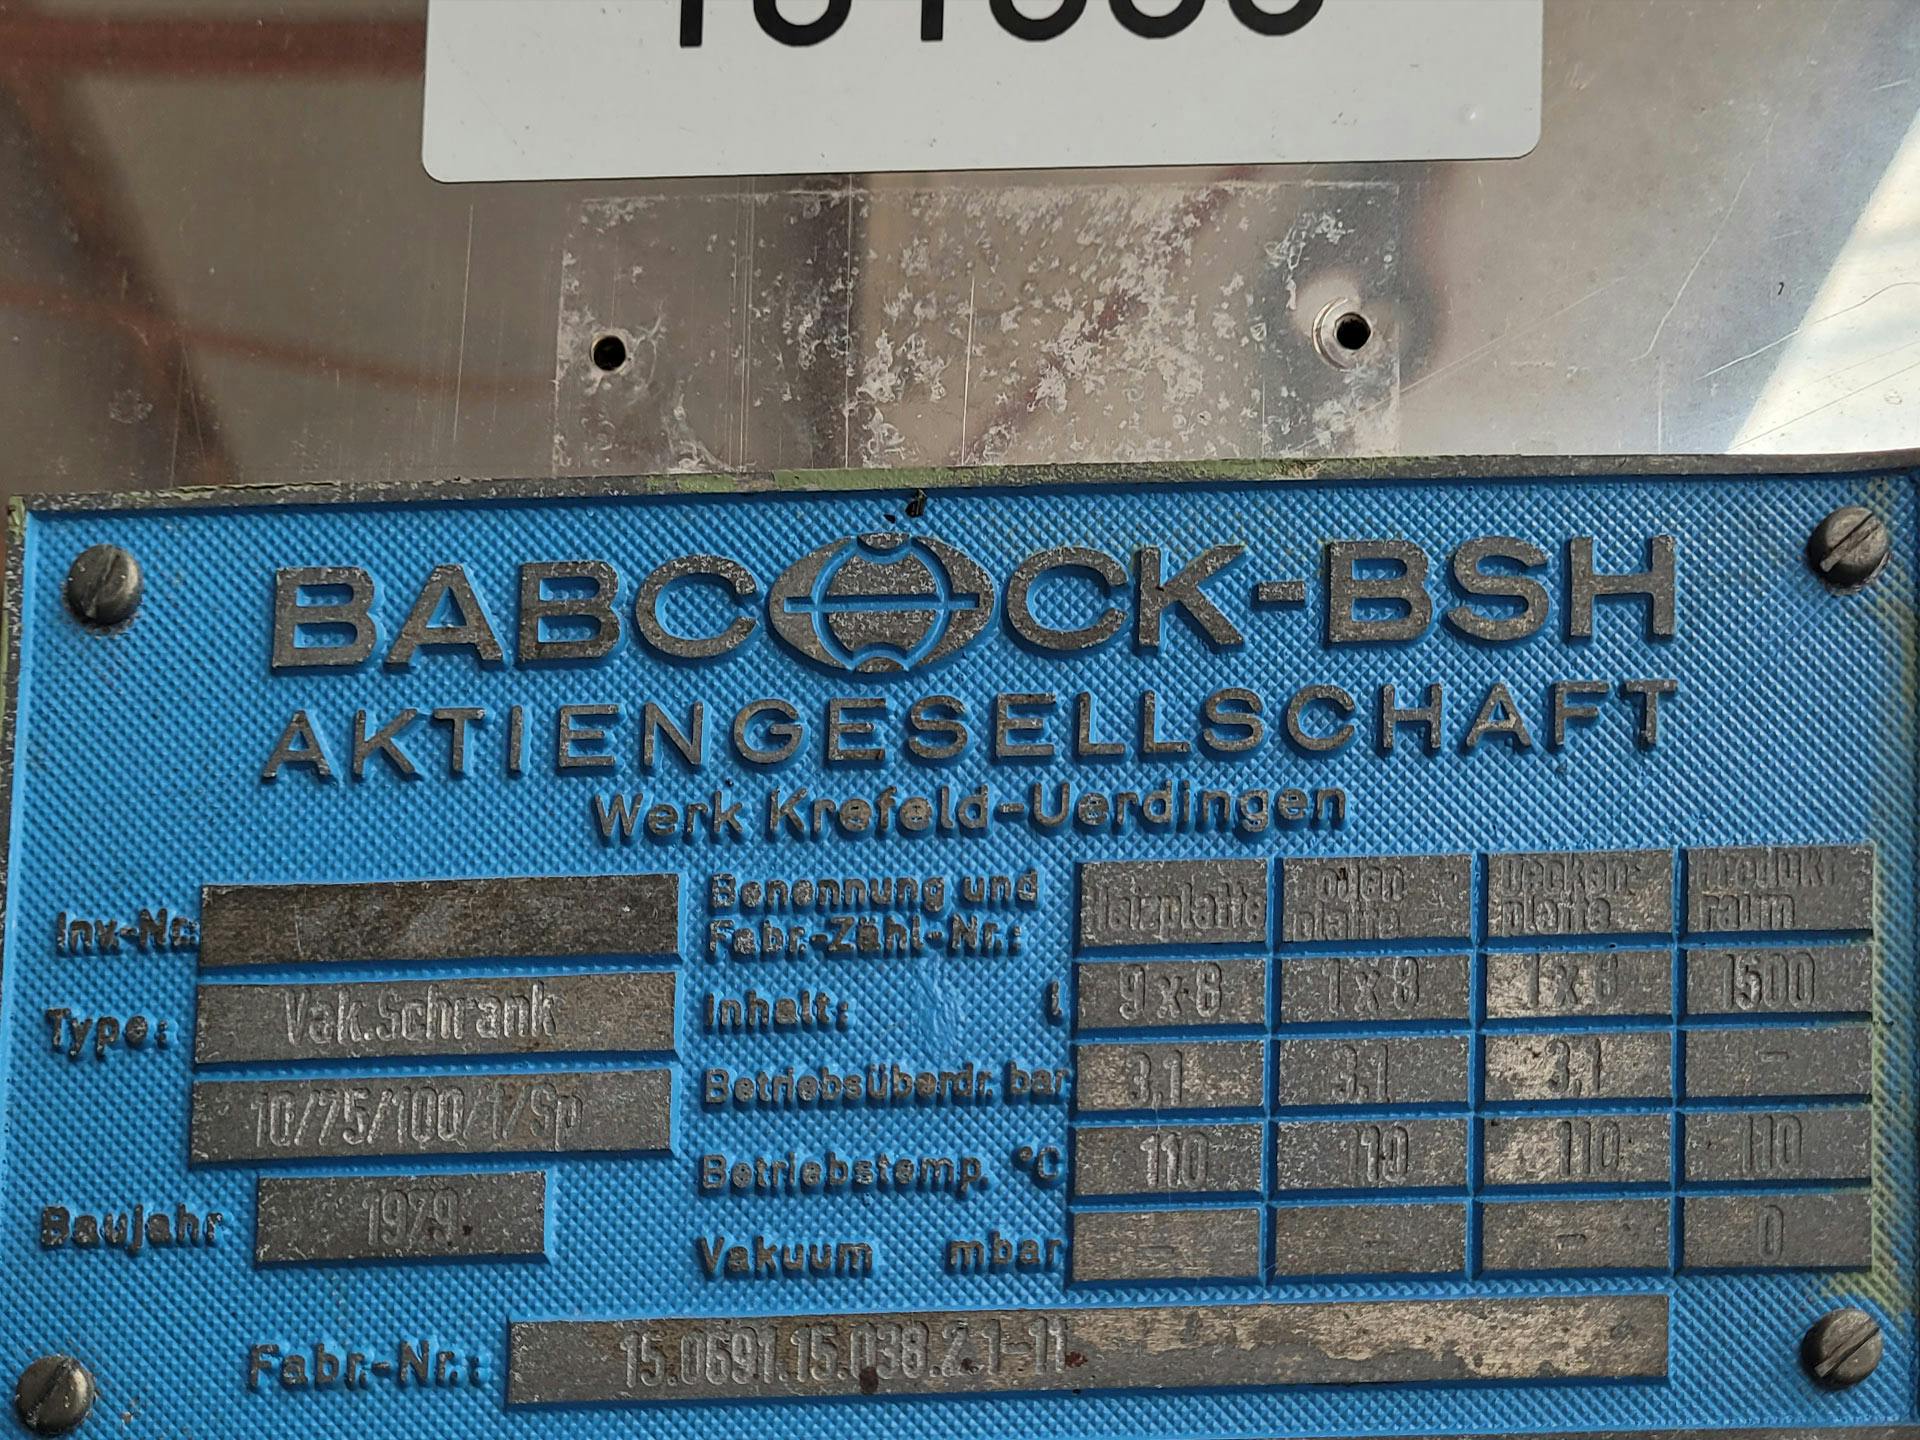 Babcock-BSH 10/75/100/1/SP - Séchoir à plateaux - image 5